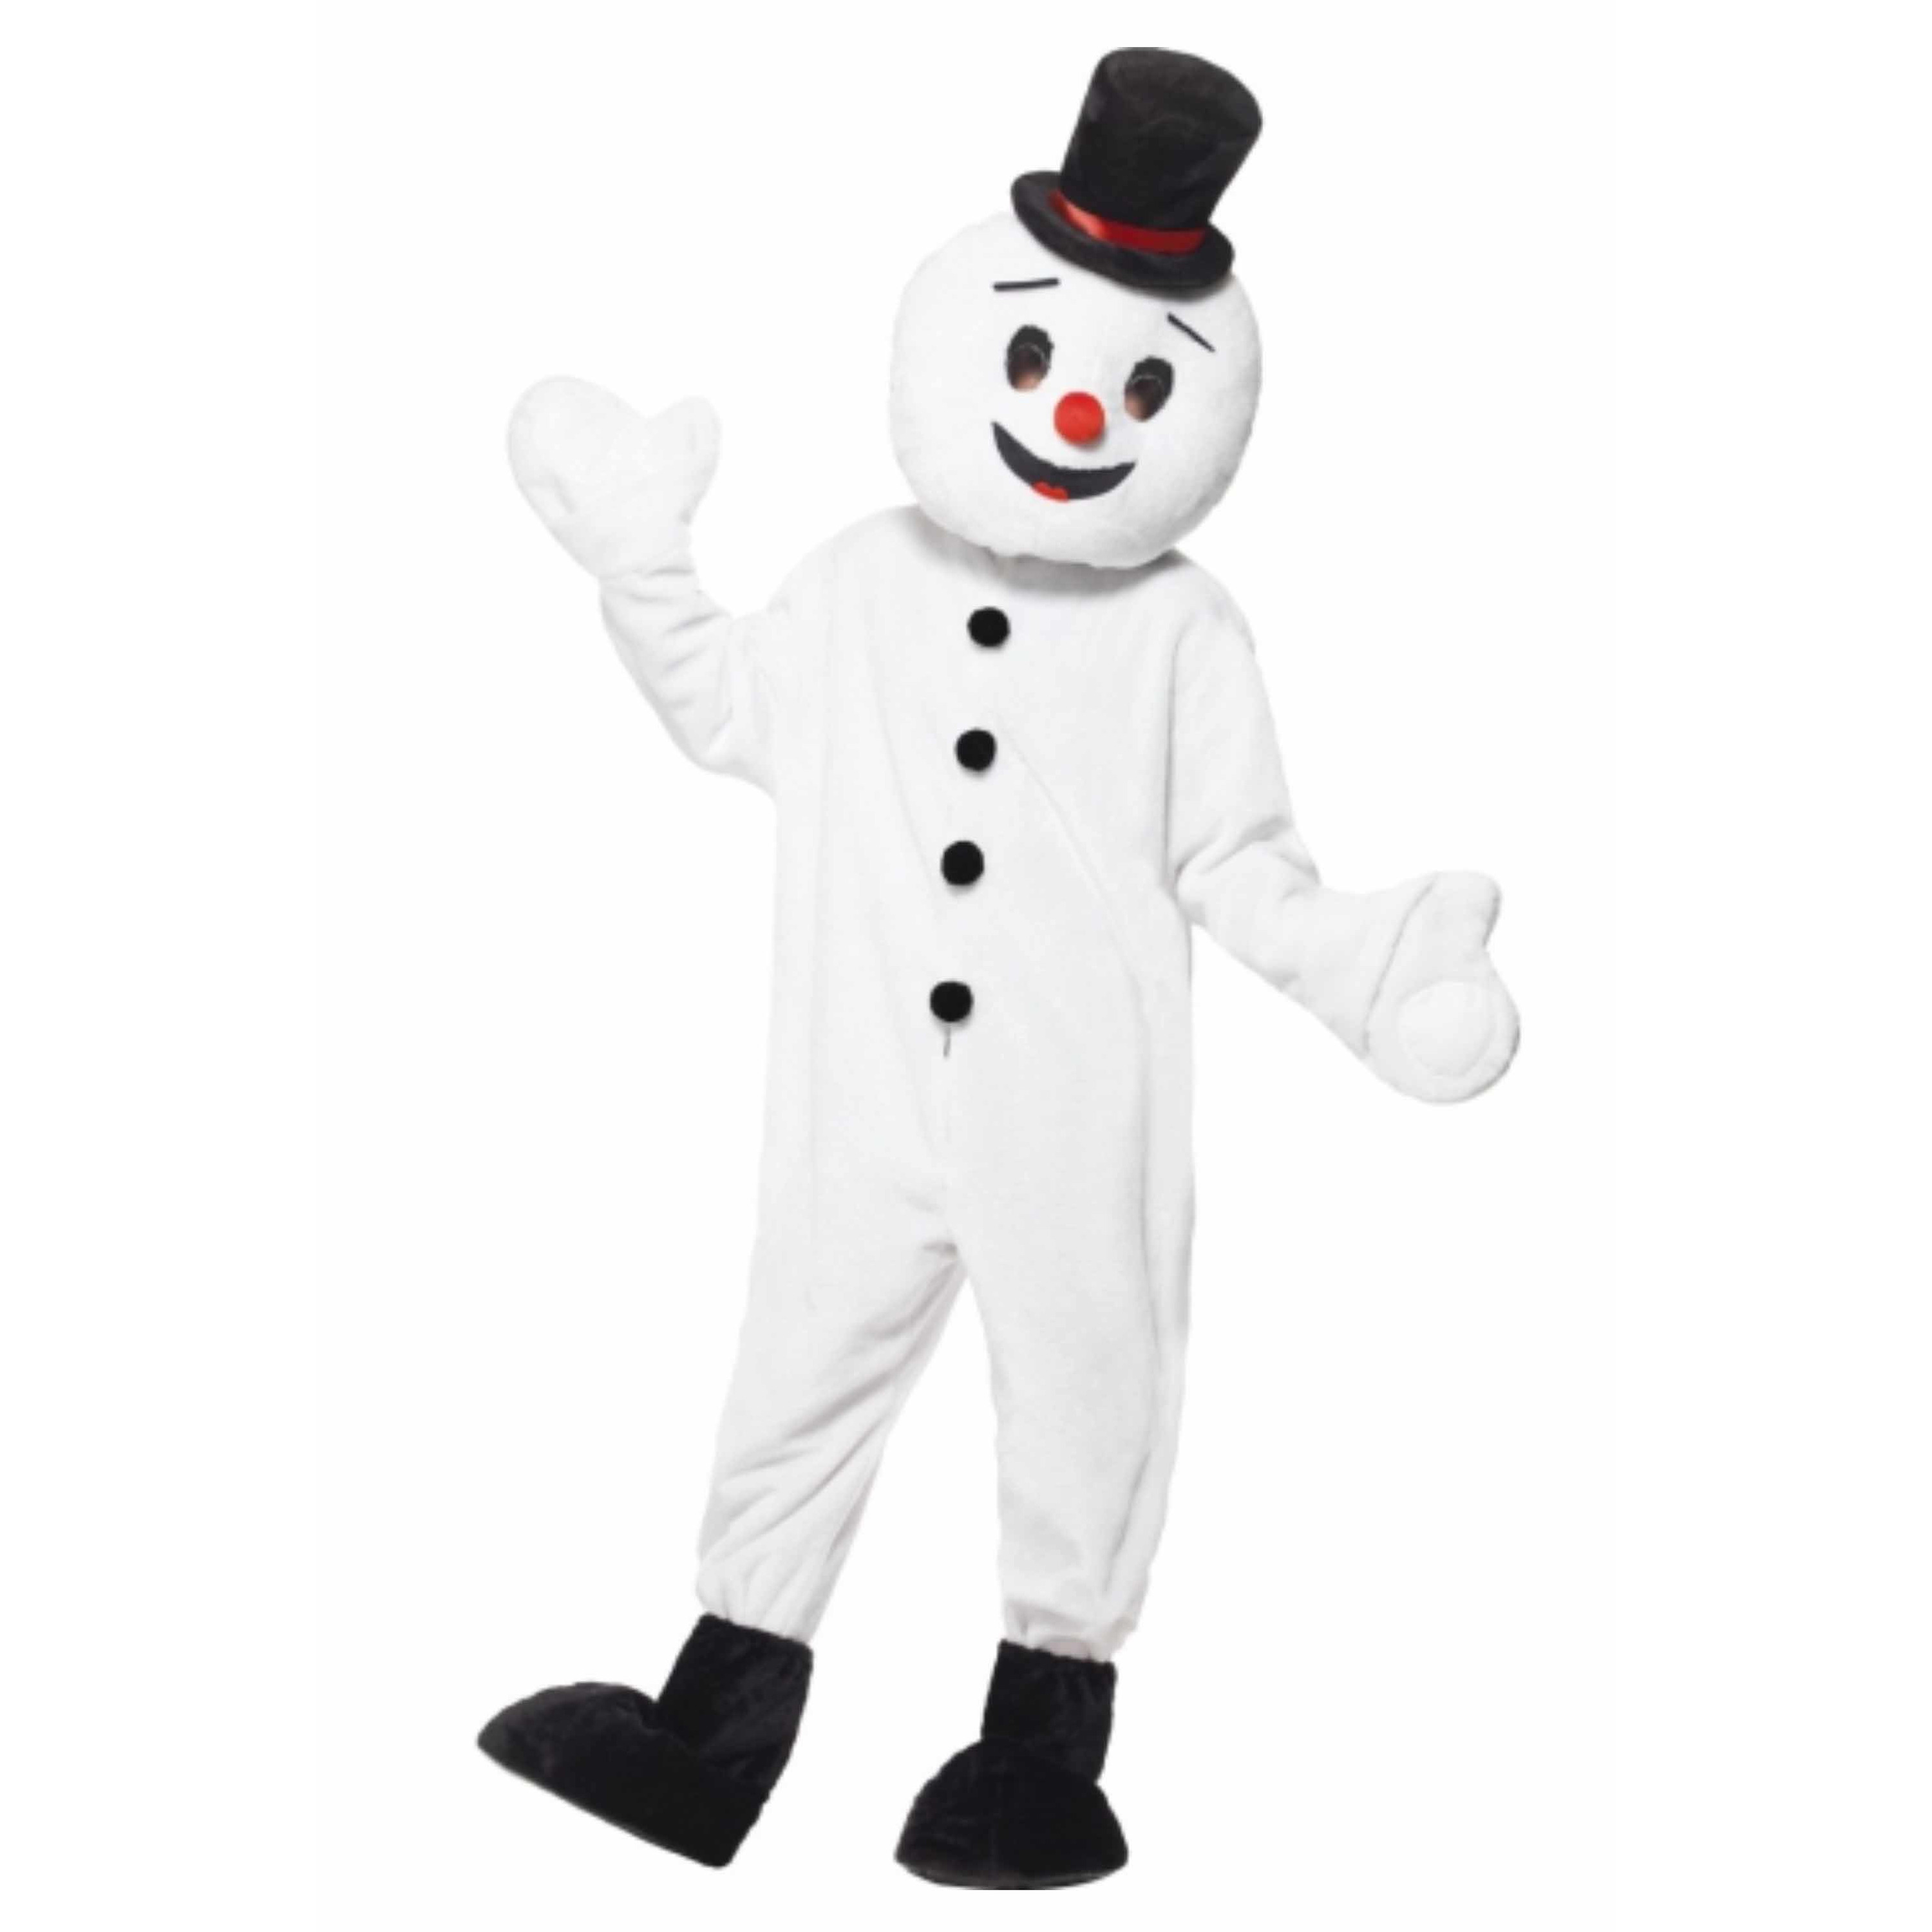 Sneeuwpop mascotte kostuum